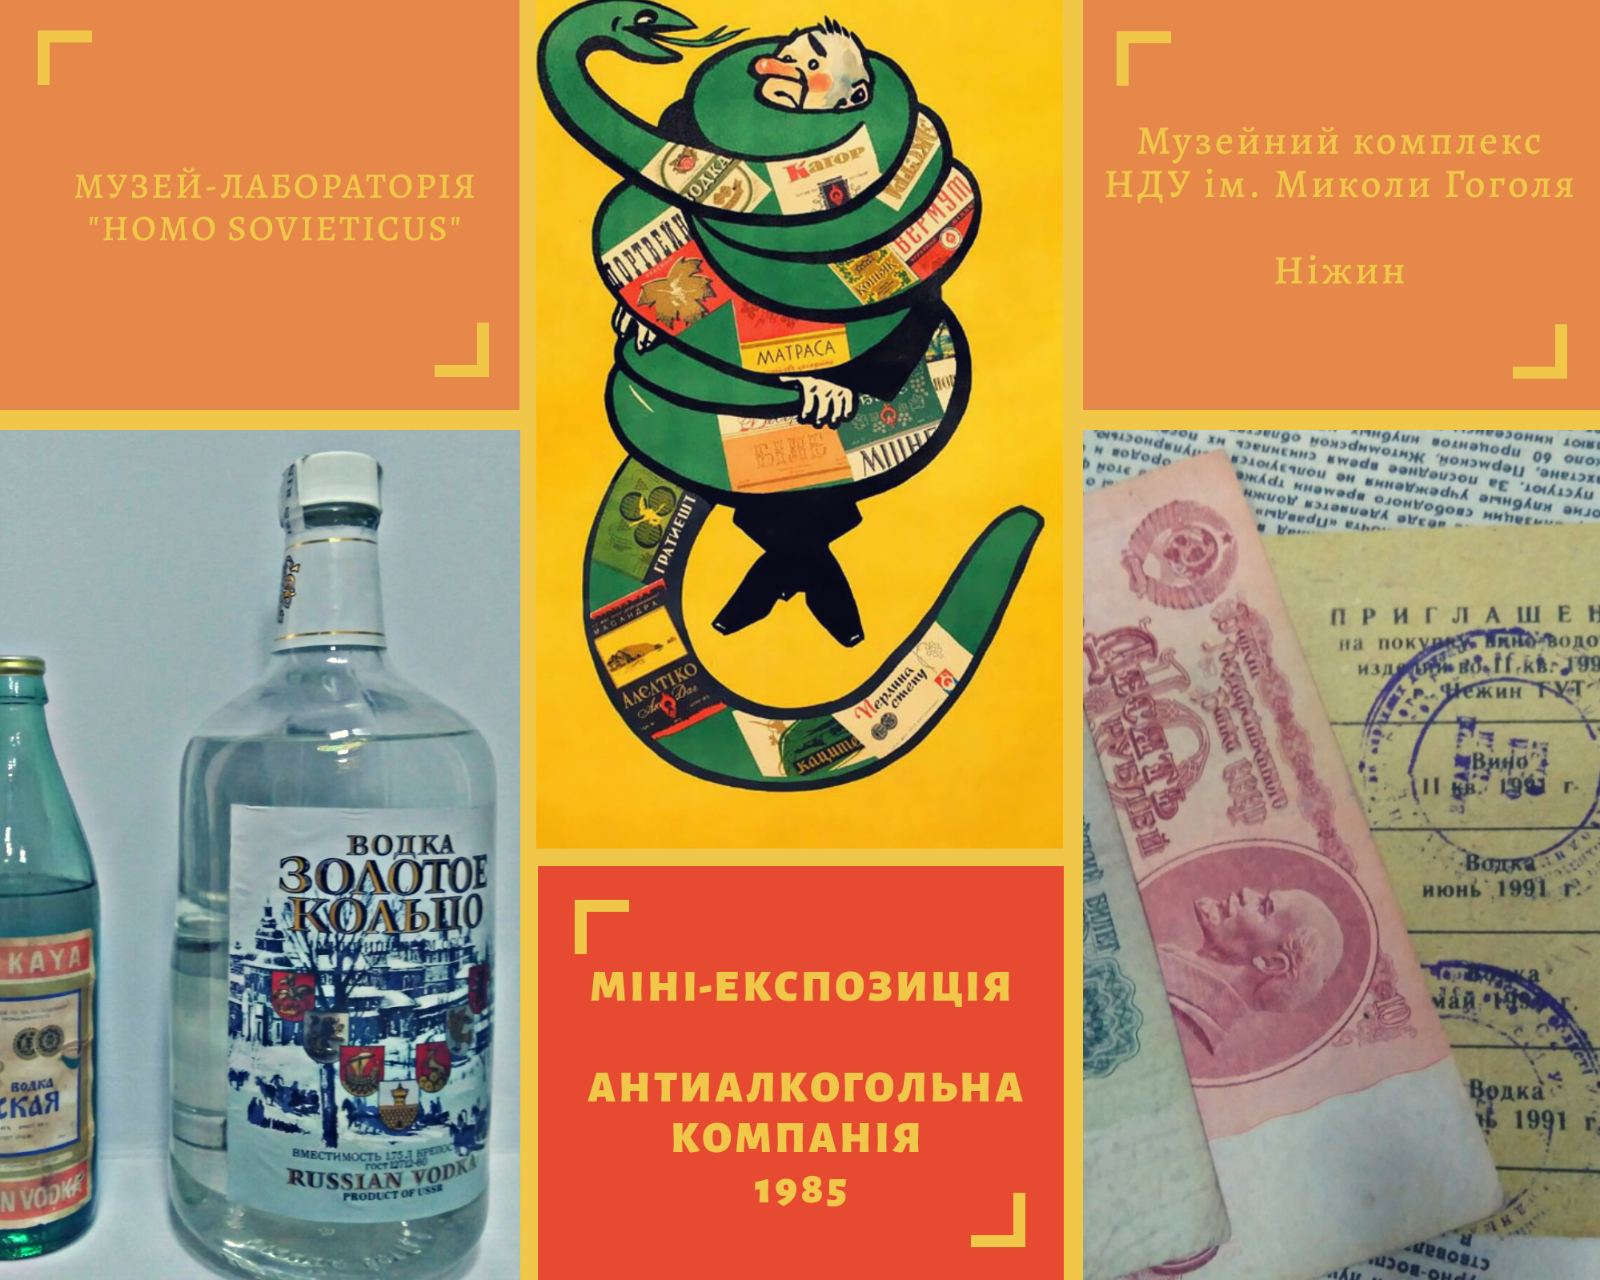 НДУ, експозиція,  антиалкогольна кампанія